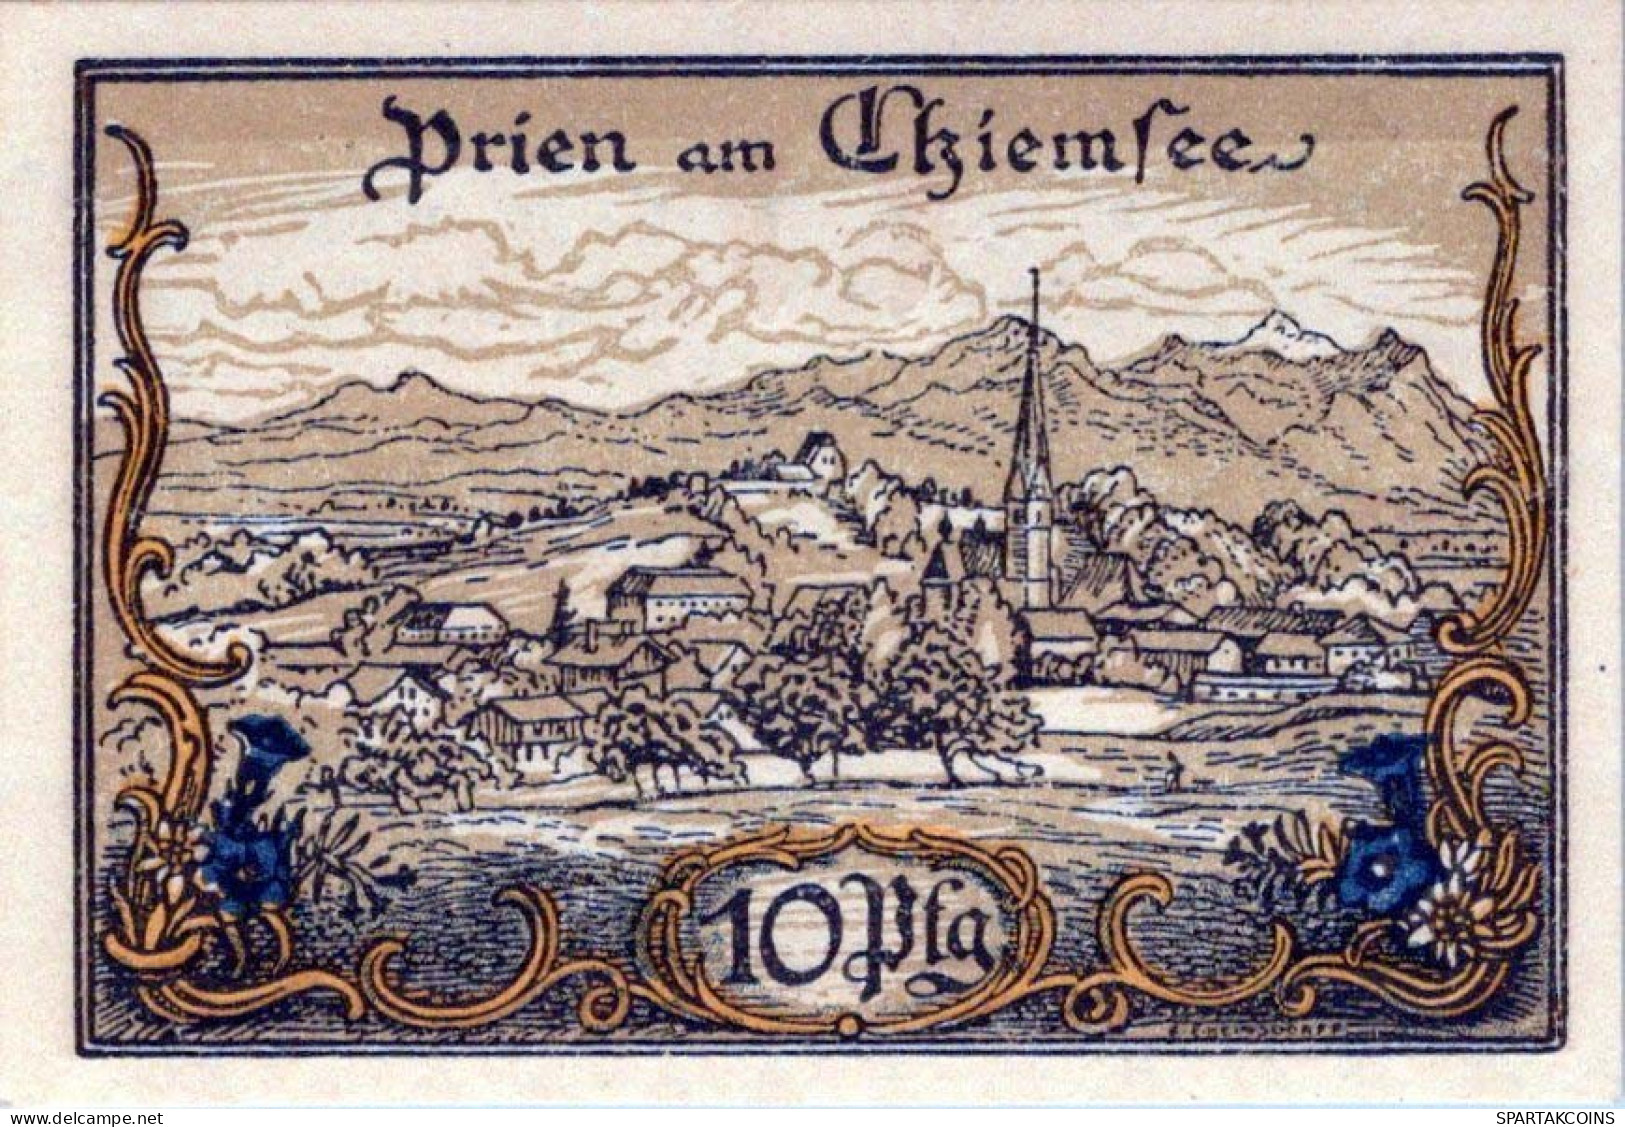 10 PFENNIG 1920 Stadt PRIEN Bavaria UNC DEUTSCHLAND Notgeld Banknote #PB728 - [11] Local Banknote Issues